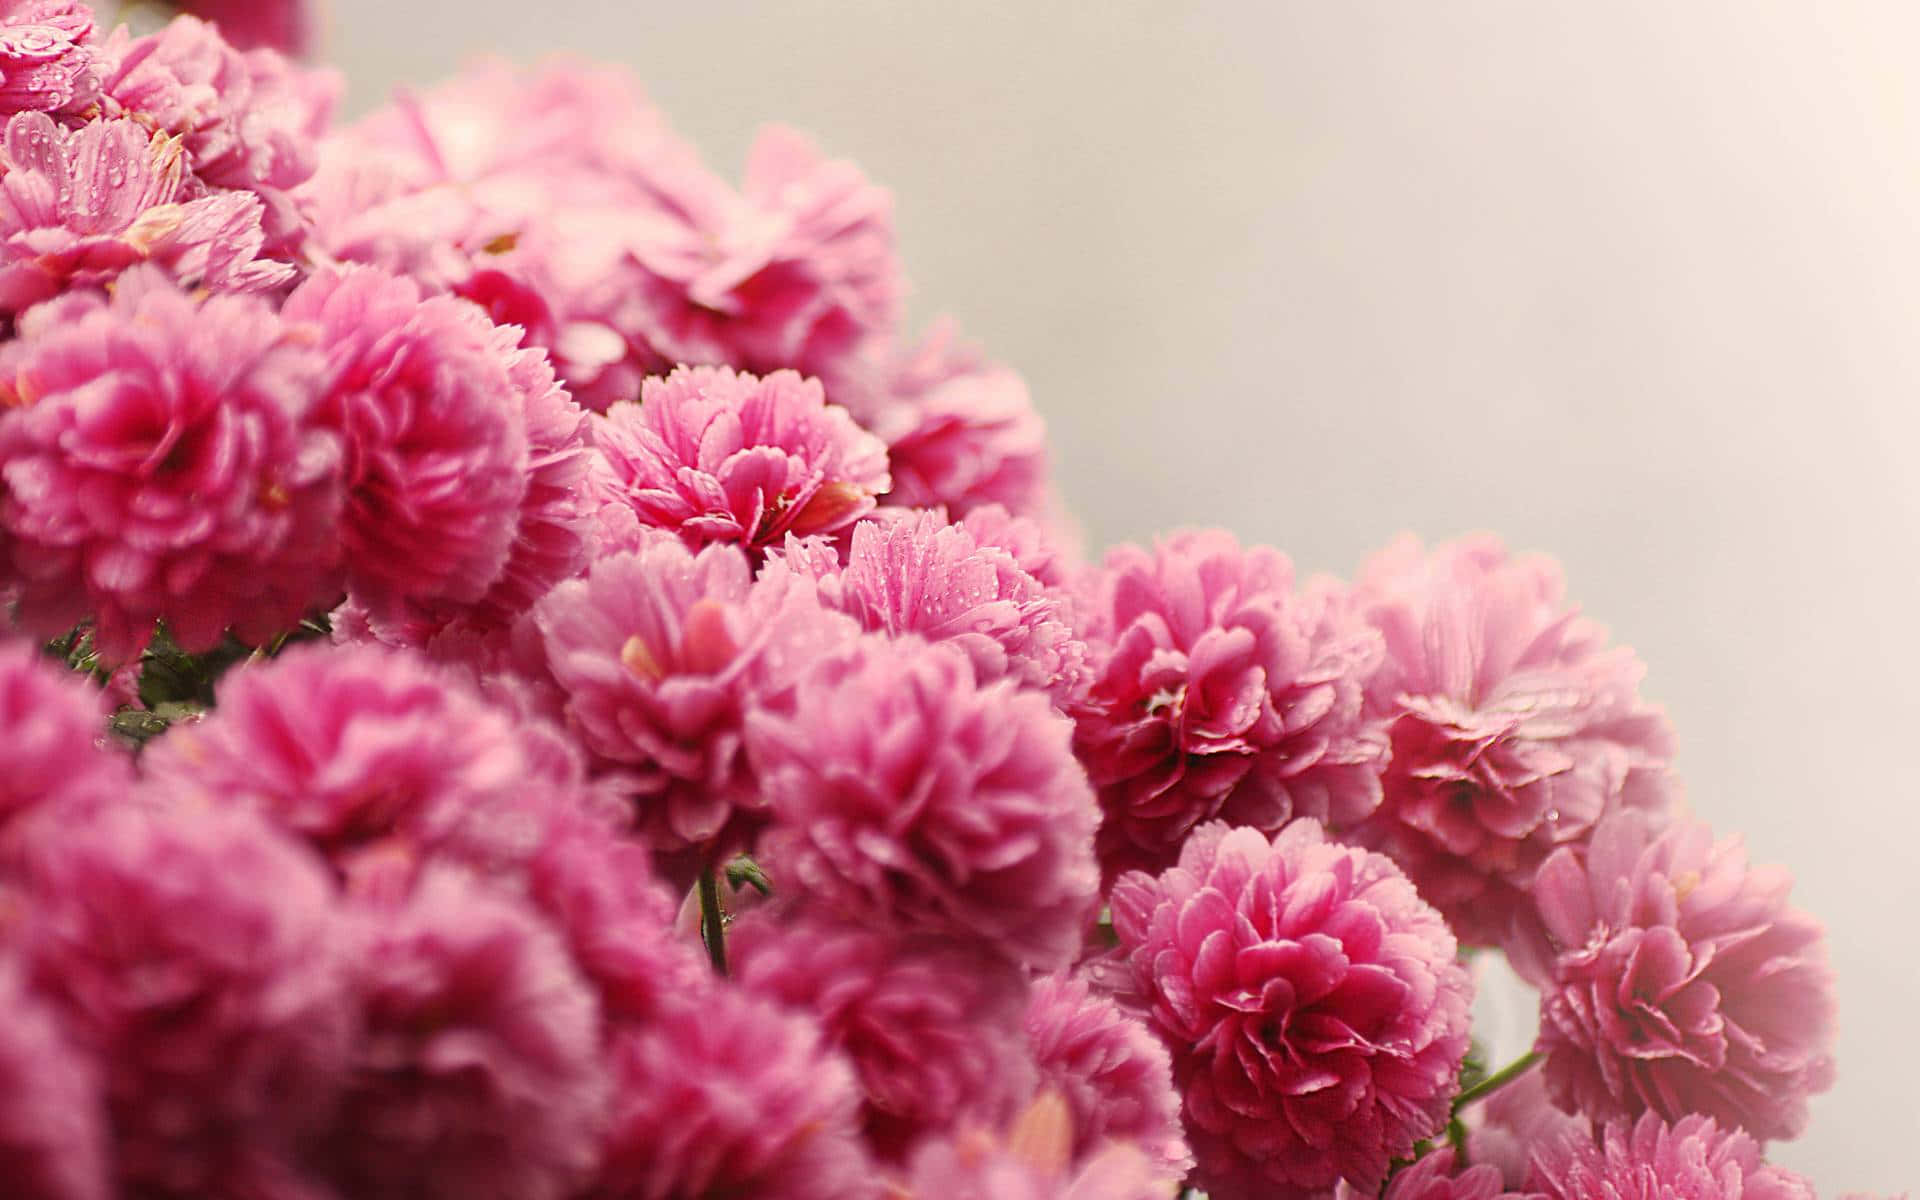 Ensmuk Pink Rose Står I Perfekt Skønhed, Som Et Symbol På Ultimativ Kærlighed Og Ømhed.